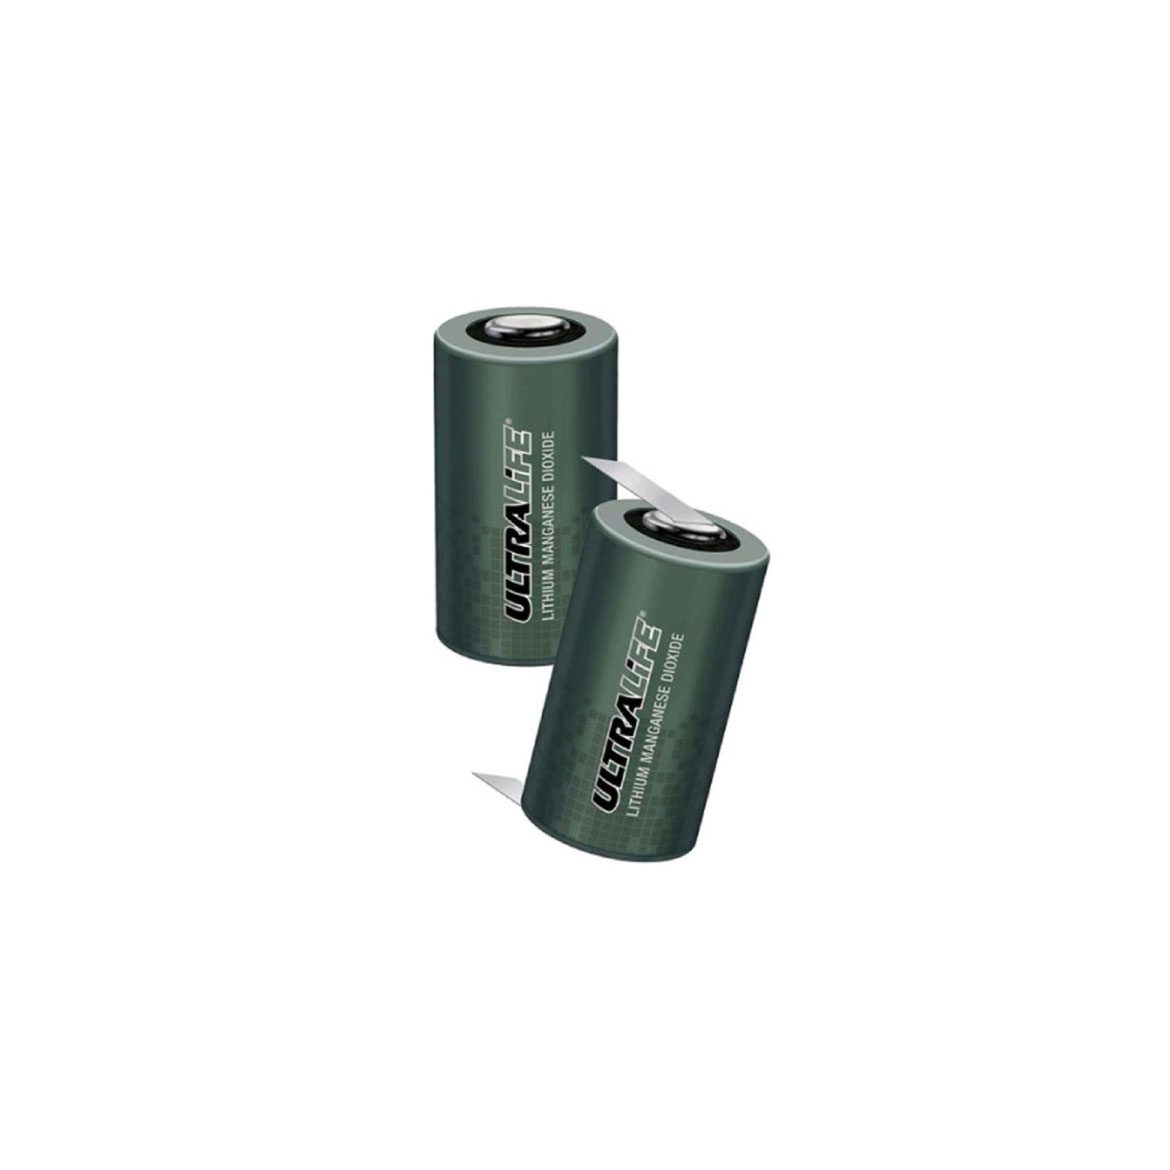 ハイレートリチウム円筒電池製品の写真